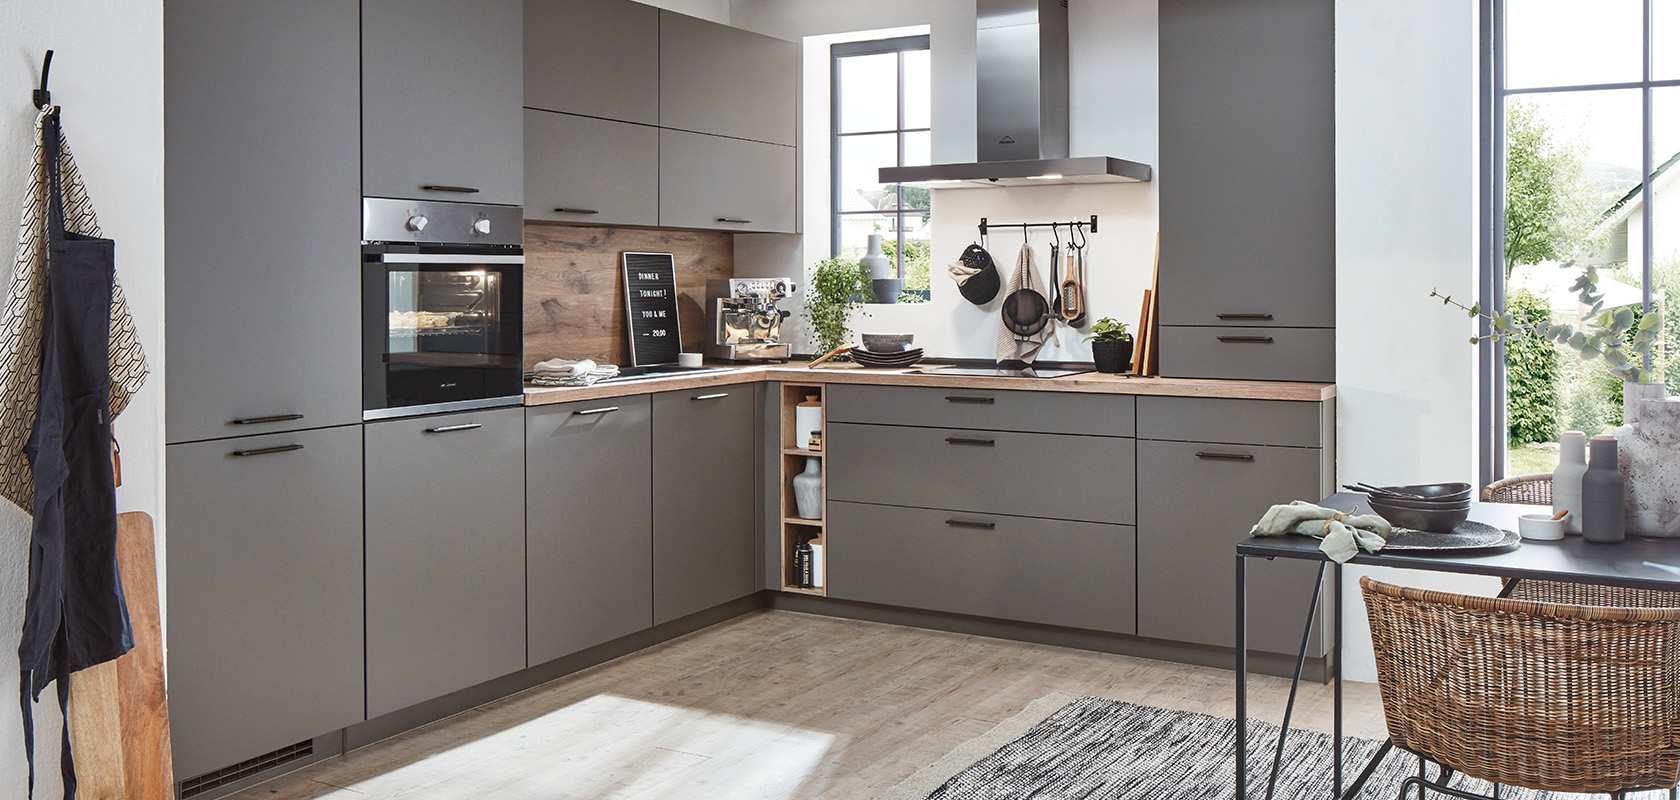 Moderne keuken met grijze kasten, houten werkbladen en roestvrijstalen apparaten, met een minimalistisch ontwerp en praktische elegantie.